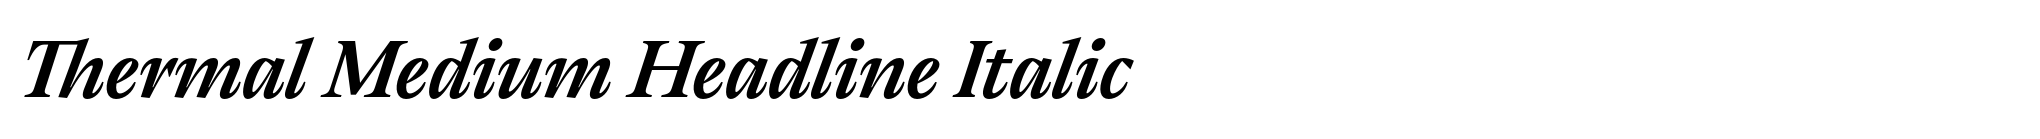 Thermal Medium Headline Italic image